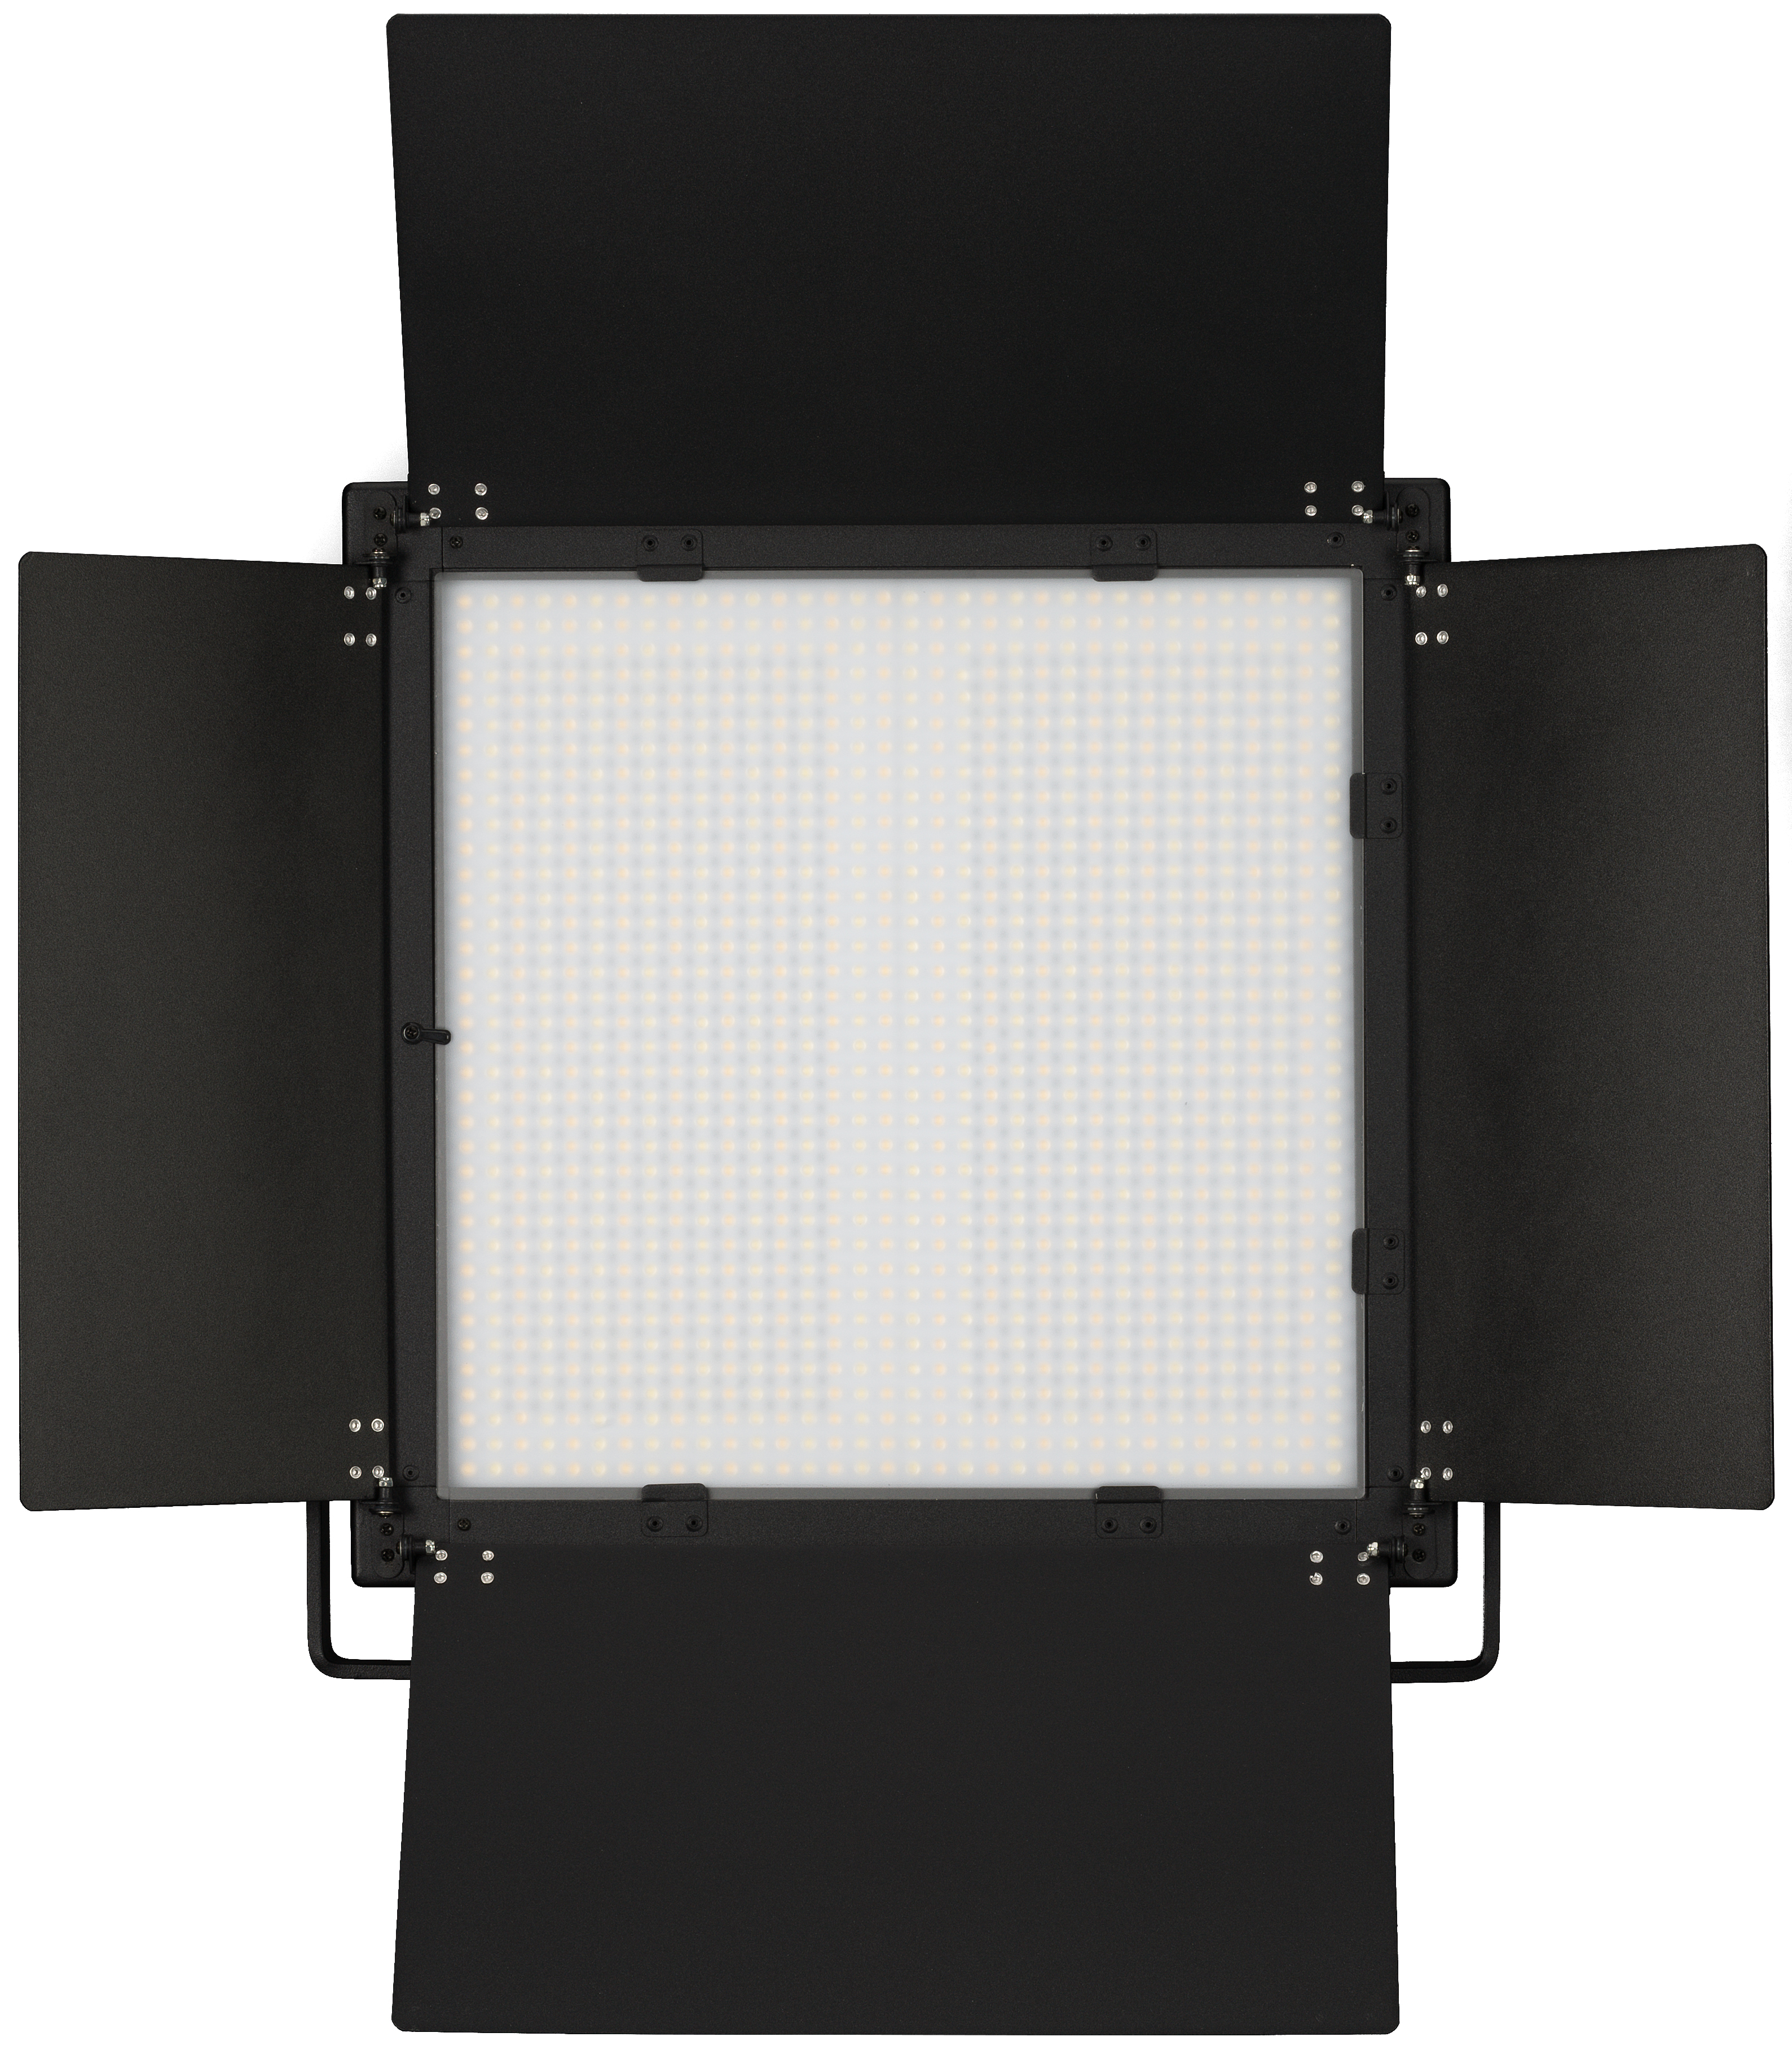 BRESSER LS-600A LED Flächenleuchte Bi-Color 37,5 W / 5.600 LUX (Refurbished)